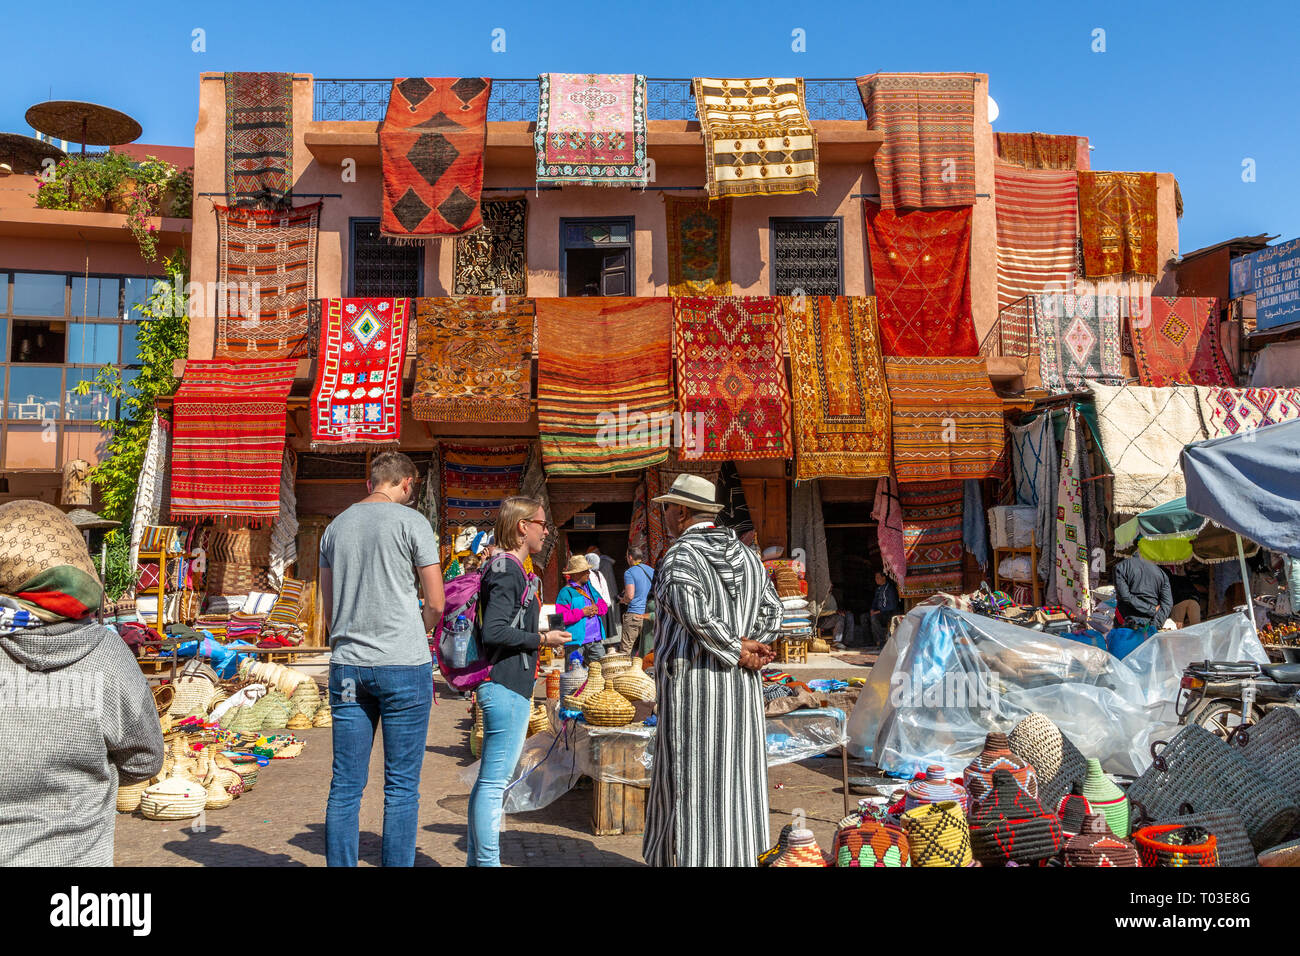 Le dédale de Marrakech médina (vieille ville) district et souks colorés faits main vente de tapis et carpettes et autres produits,Maroc Afrique du Nord Banque D'Images